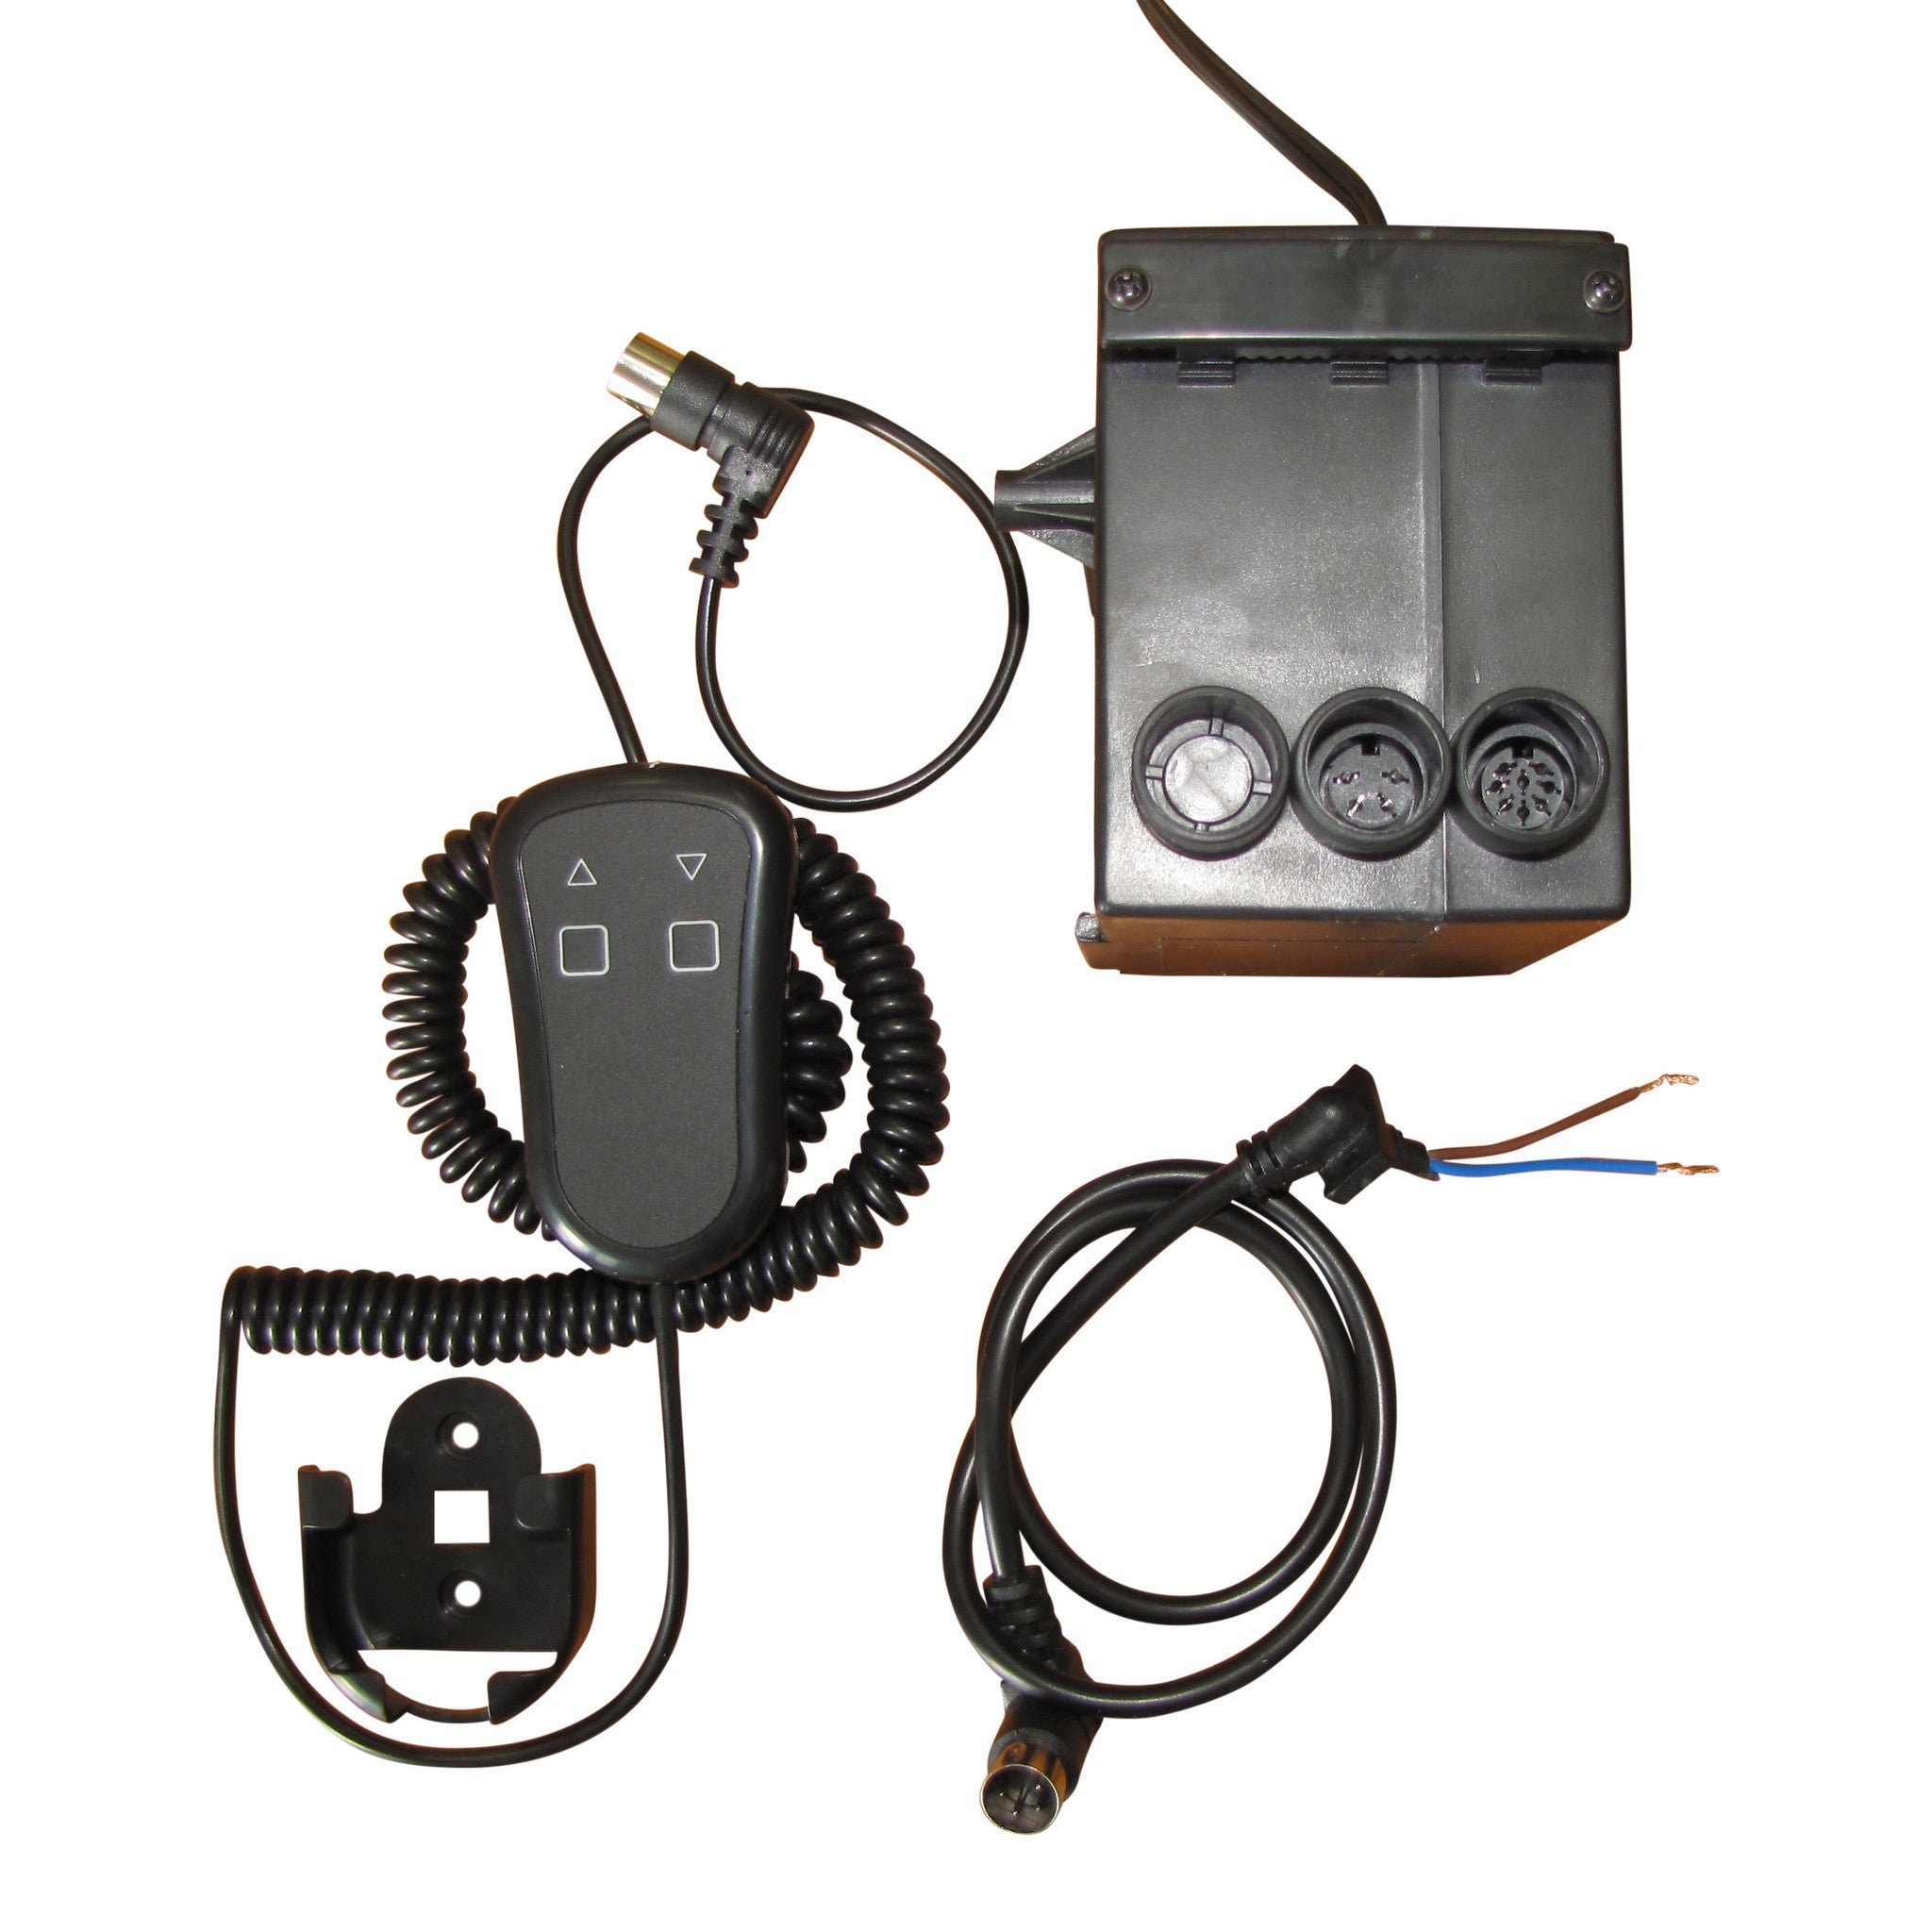 致动器手持式有线控制系统-CSPS Product Image